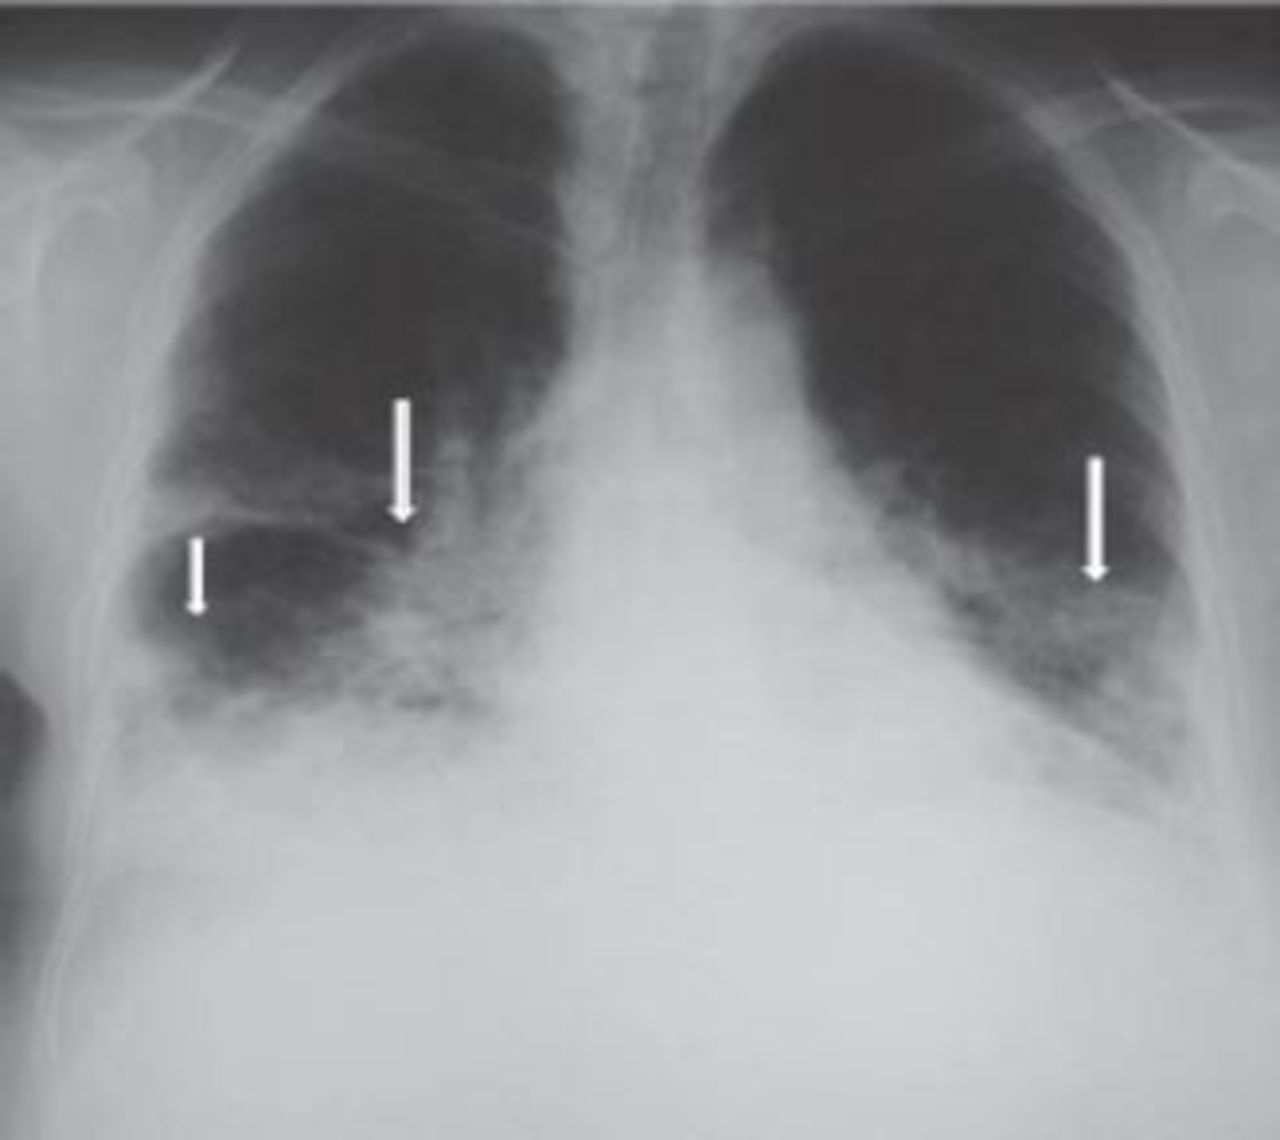 saddle pulmonary embolism xray